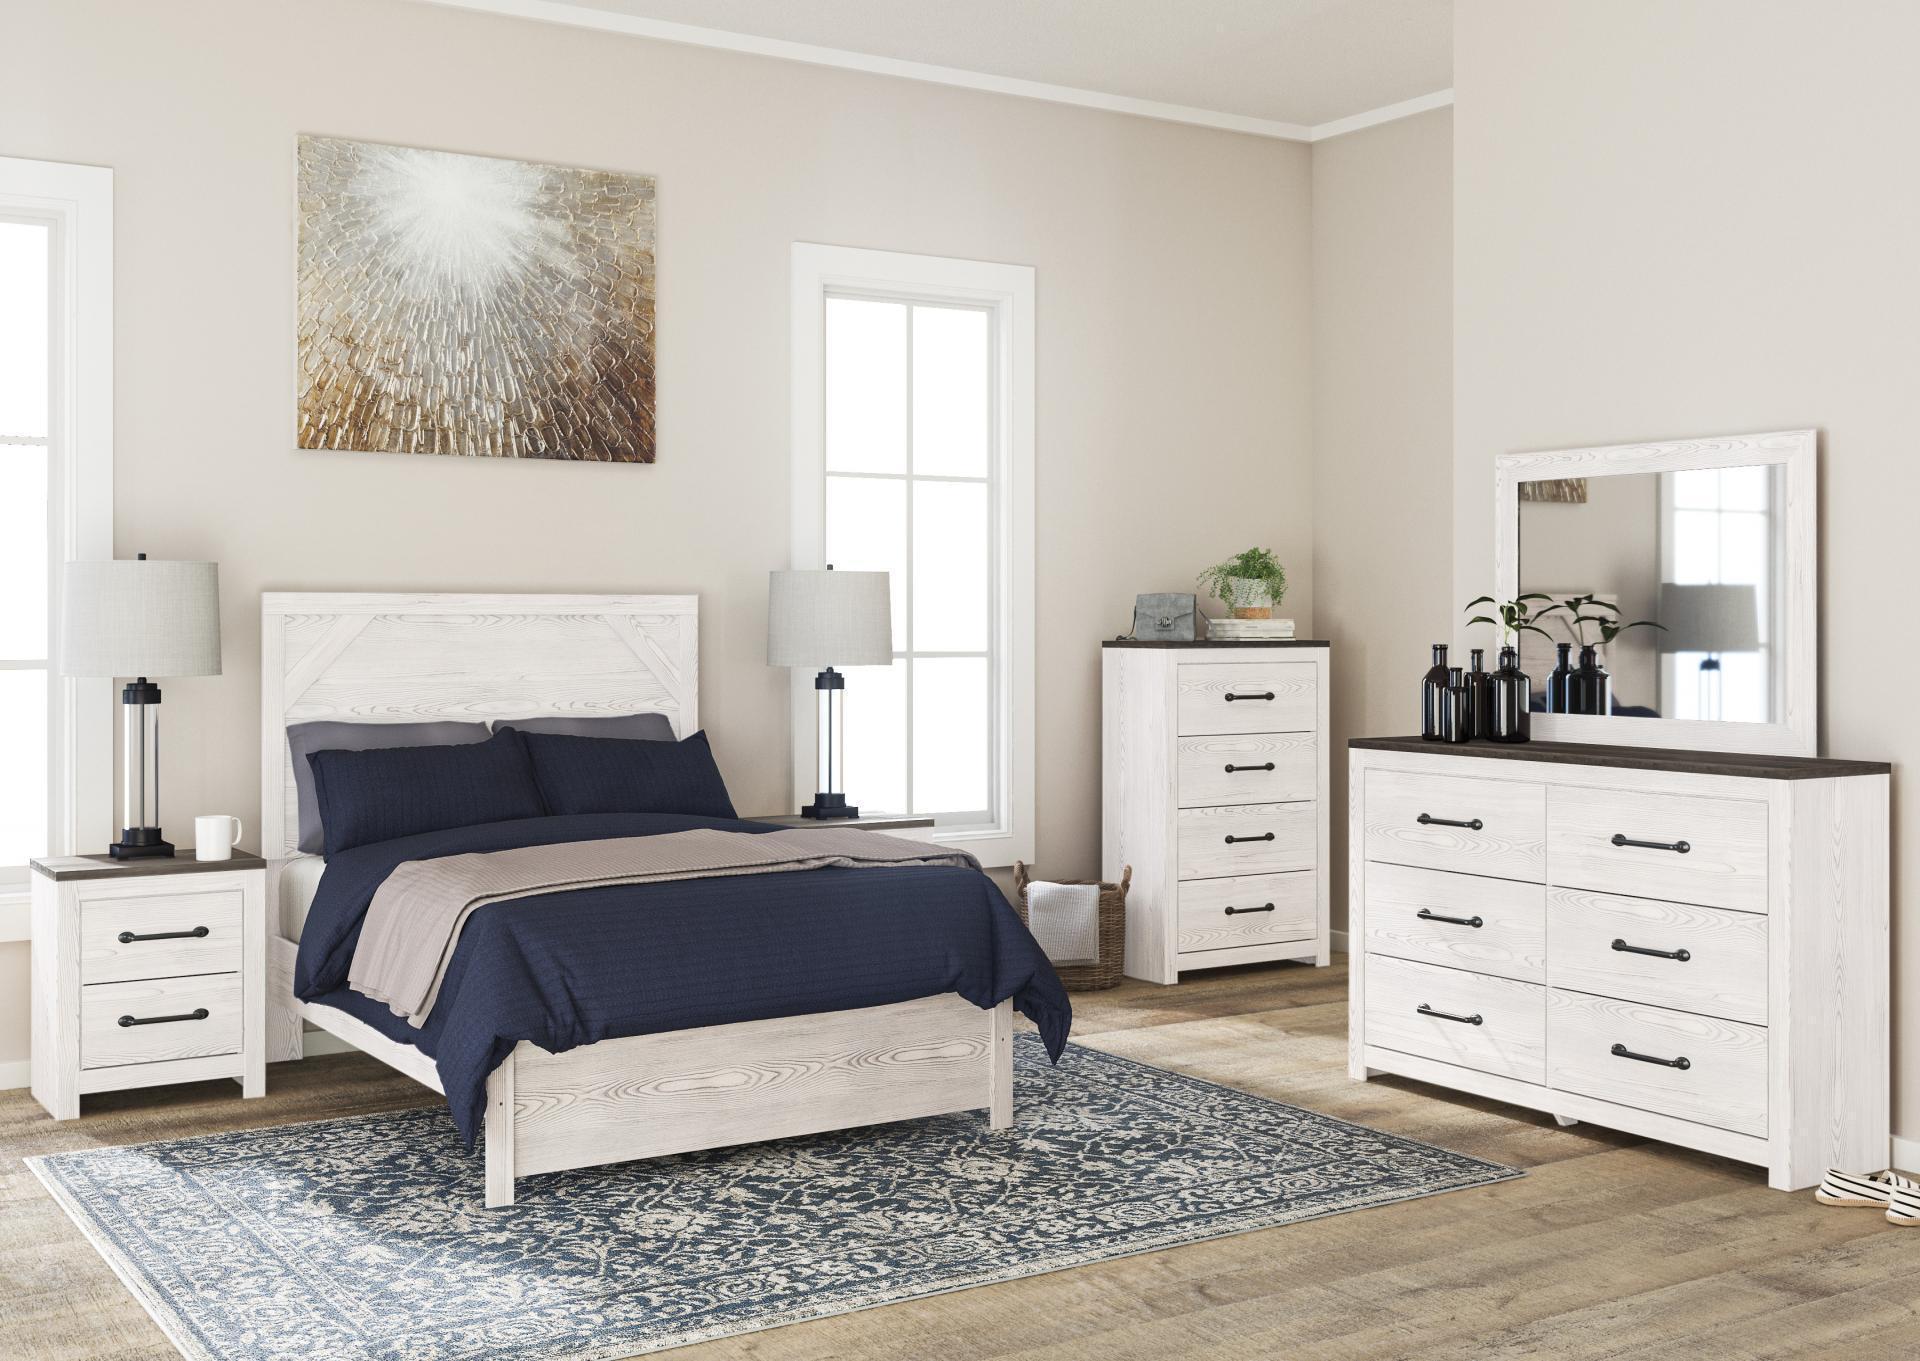 White Gerridan Queen Panel Bed w/ Nightstand, Dresser & Mirror,In-Store Product